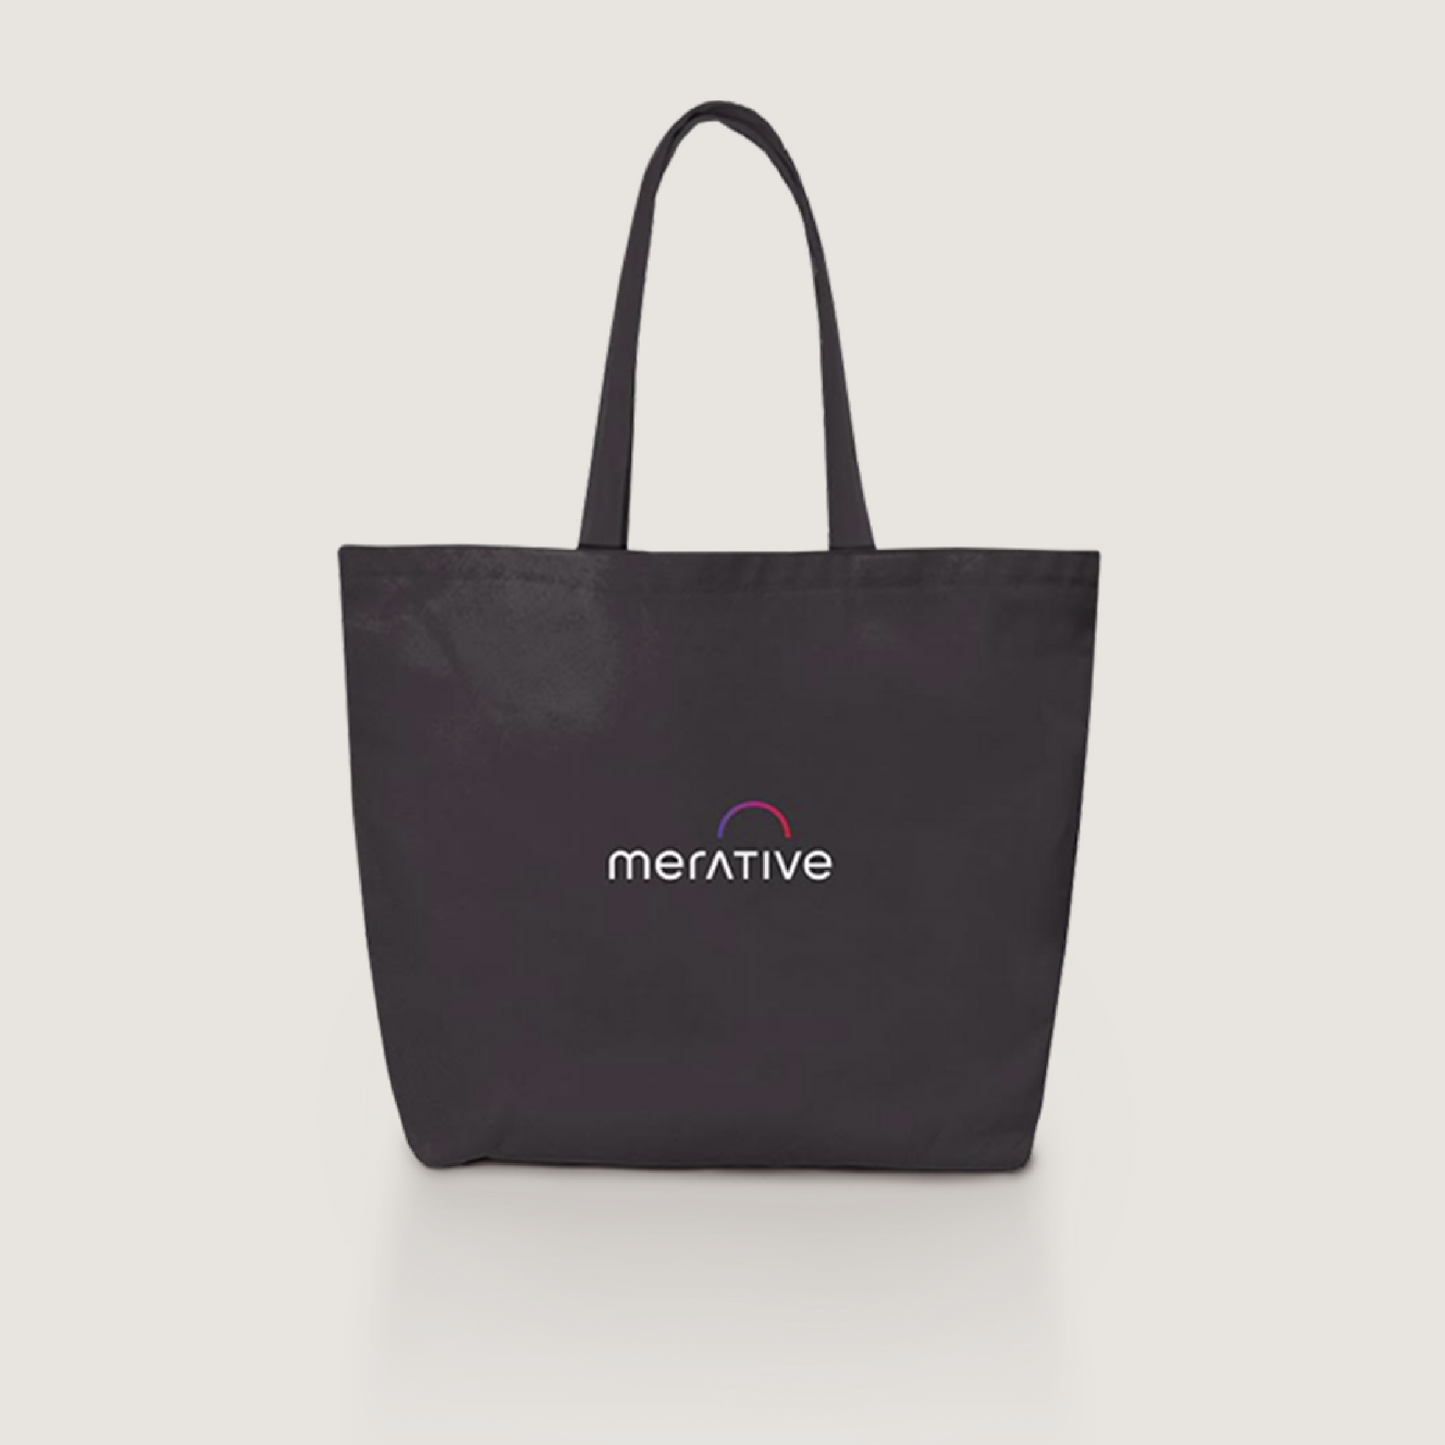 Merative Branded Tote Bag